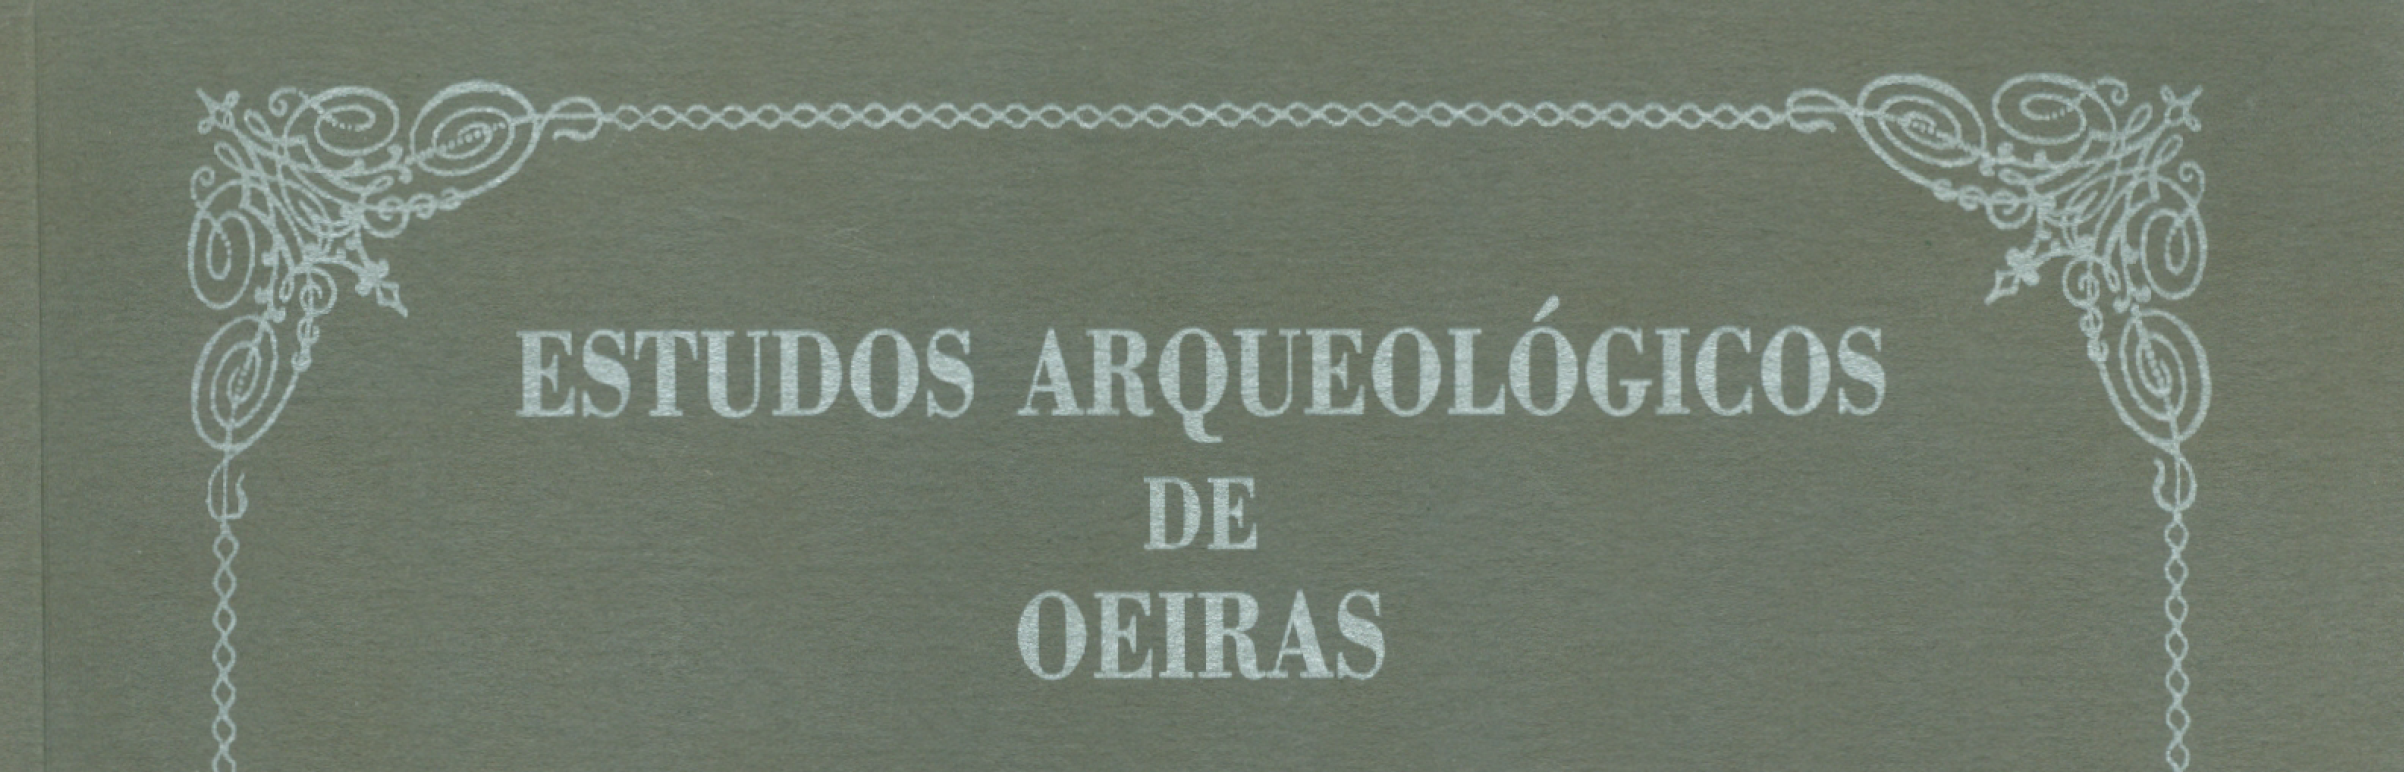 Estudos Arqueológicos de Oeiras, 15